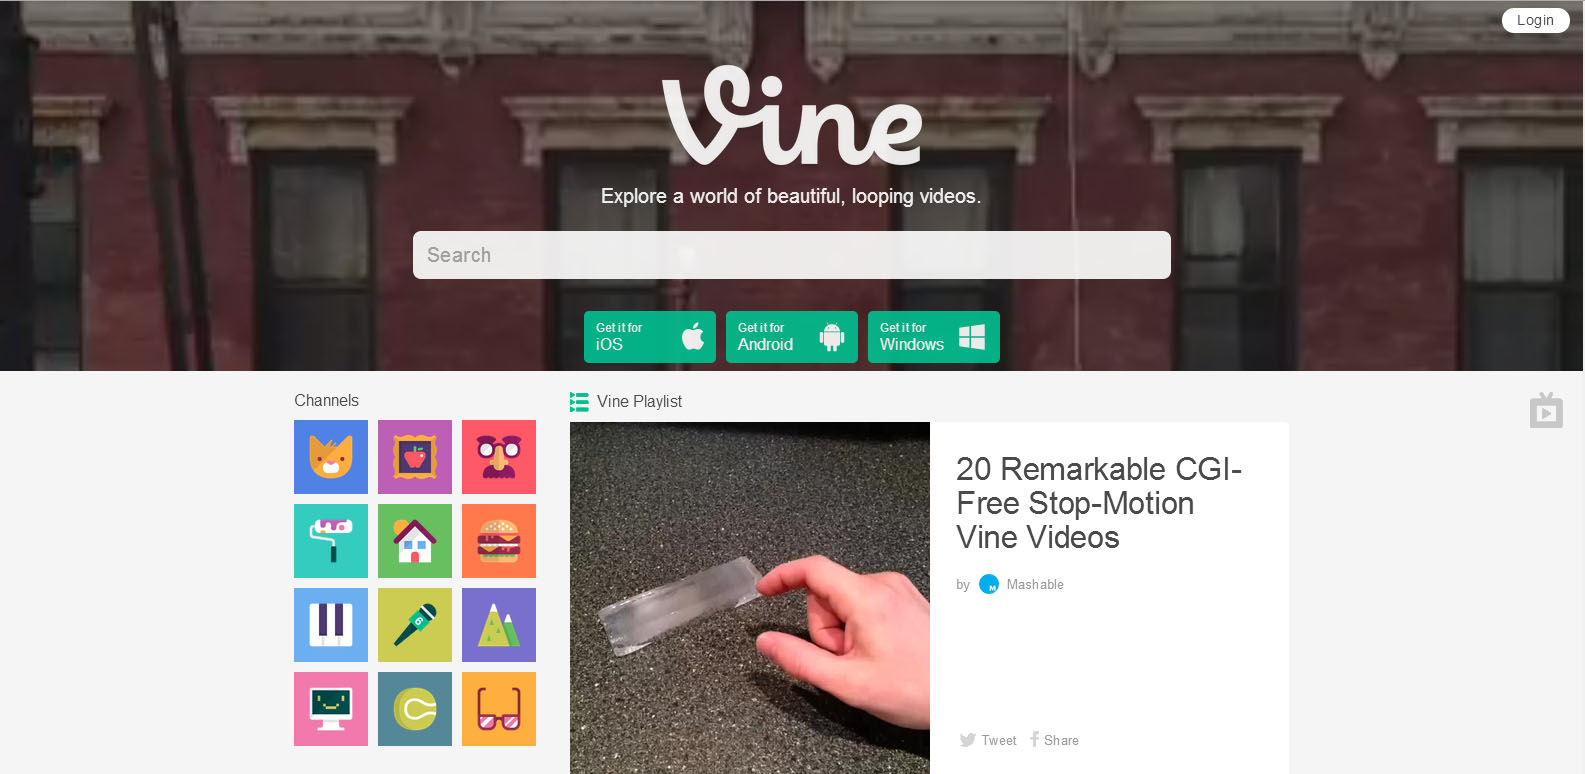 Com nova interface e recursos, versão web do Vine fica mais completa e amigável